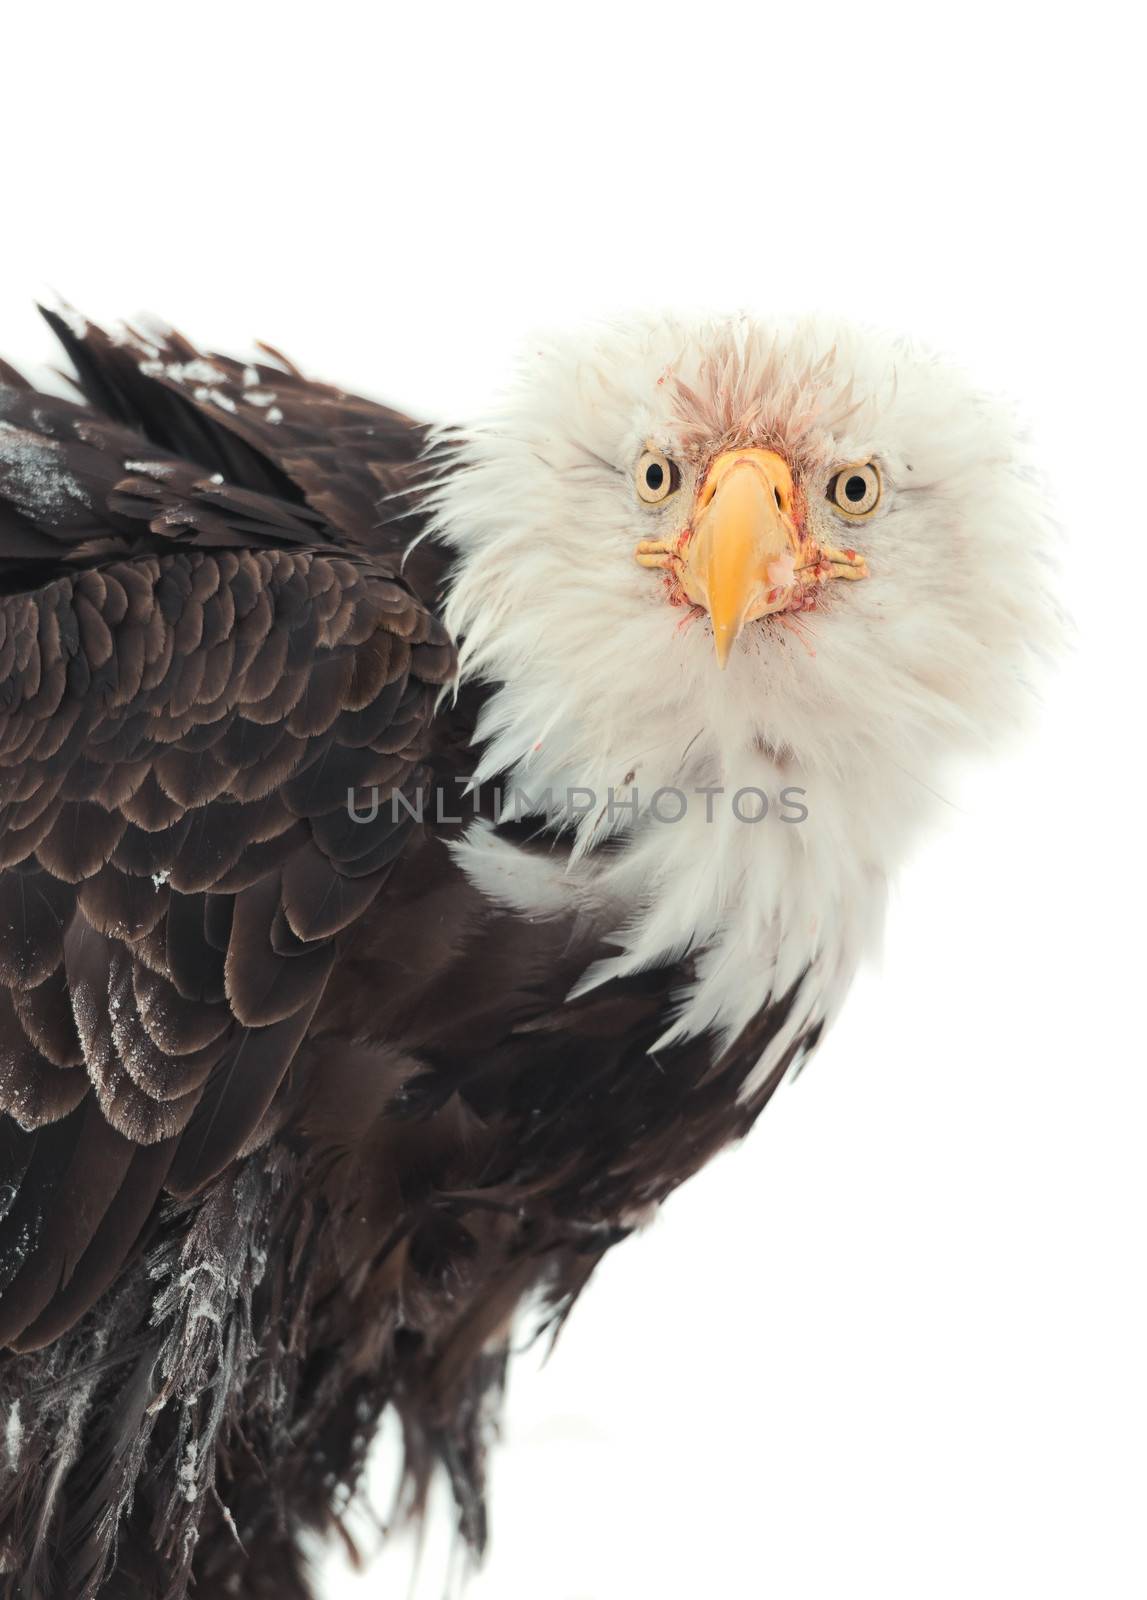 Winter Close up Portrait of a Bald eagle (Haliaeetus leucocephalus washingtoniensis ). Isolated on white background